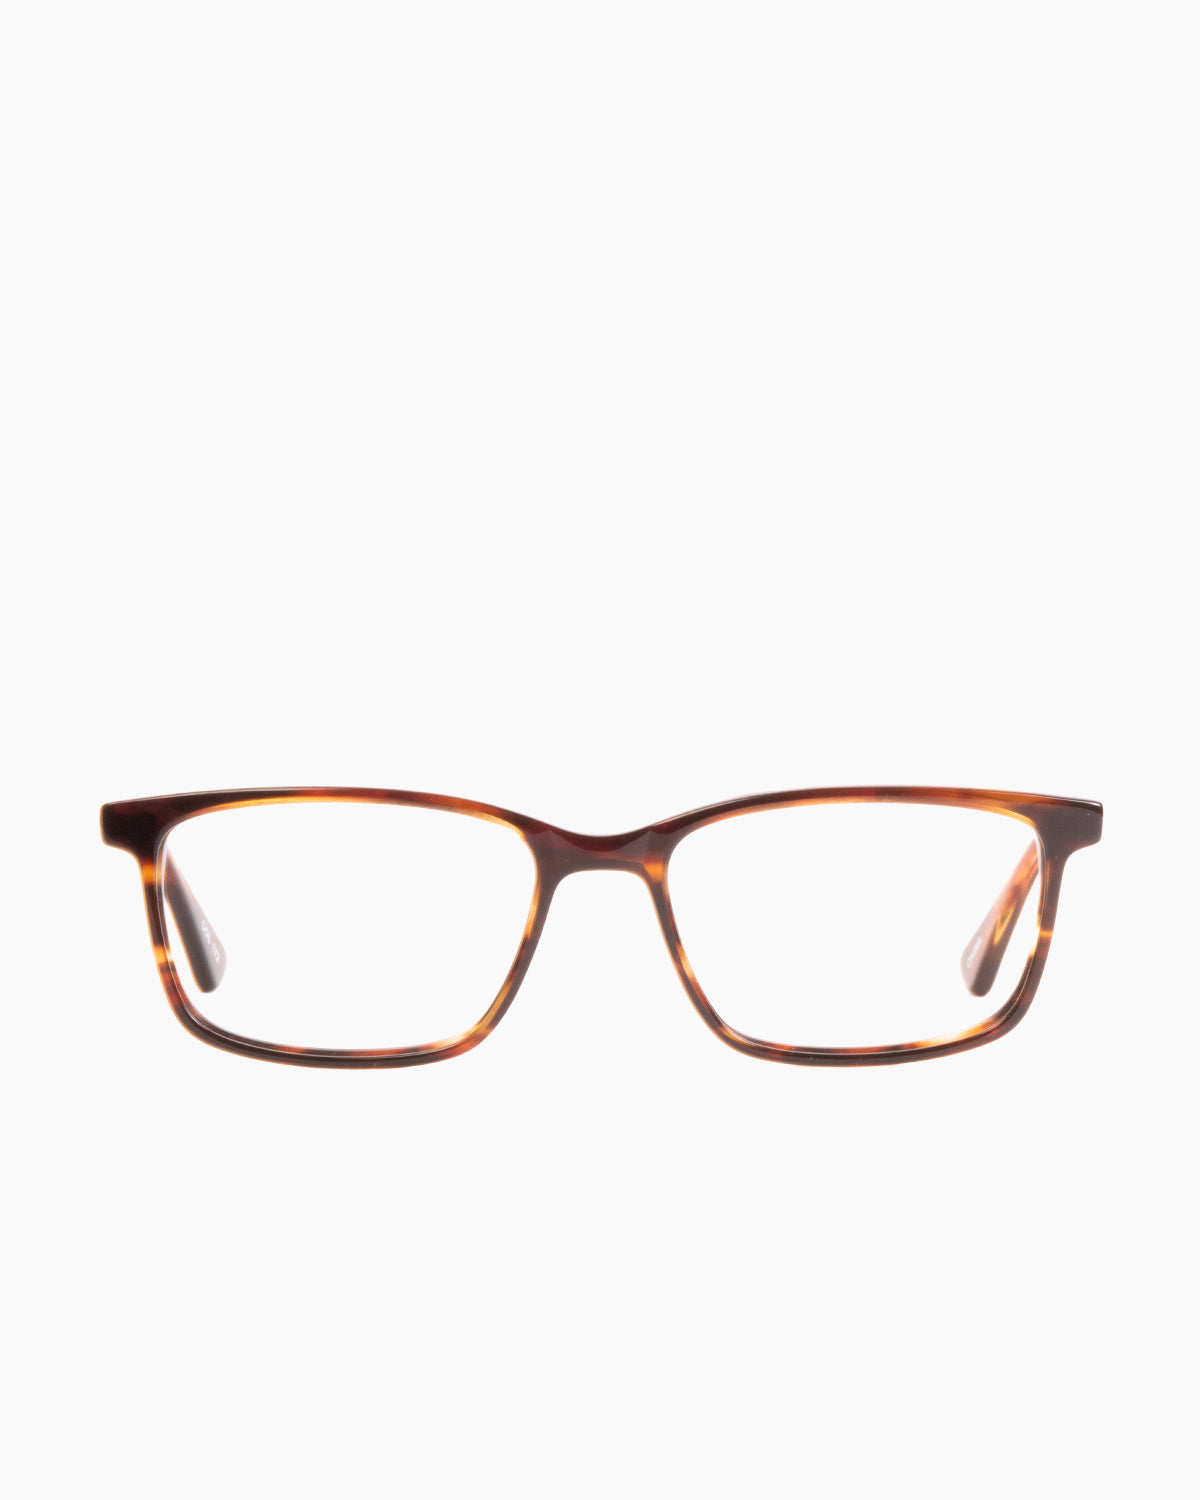 Evolve - Carter - 172 | glasses bar:  Marie-Sophie Dion